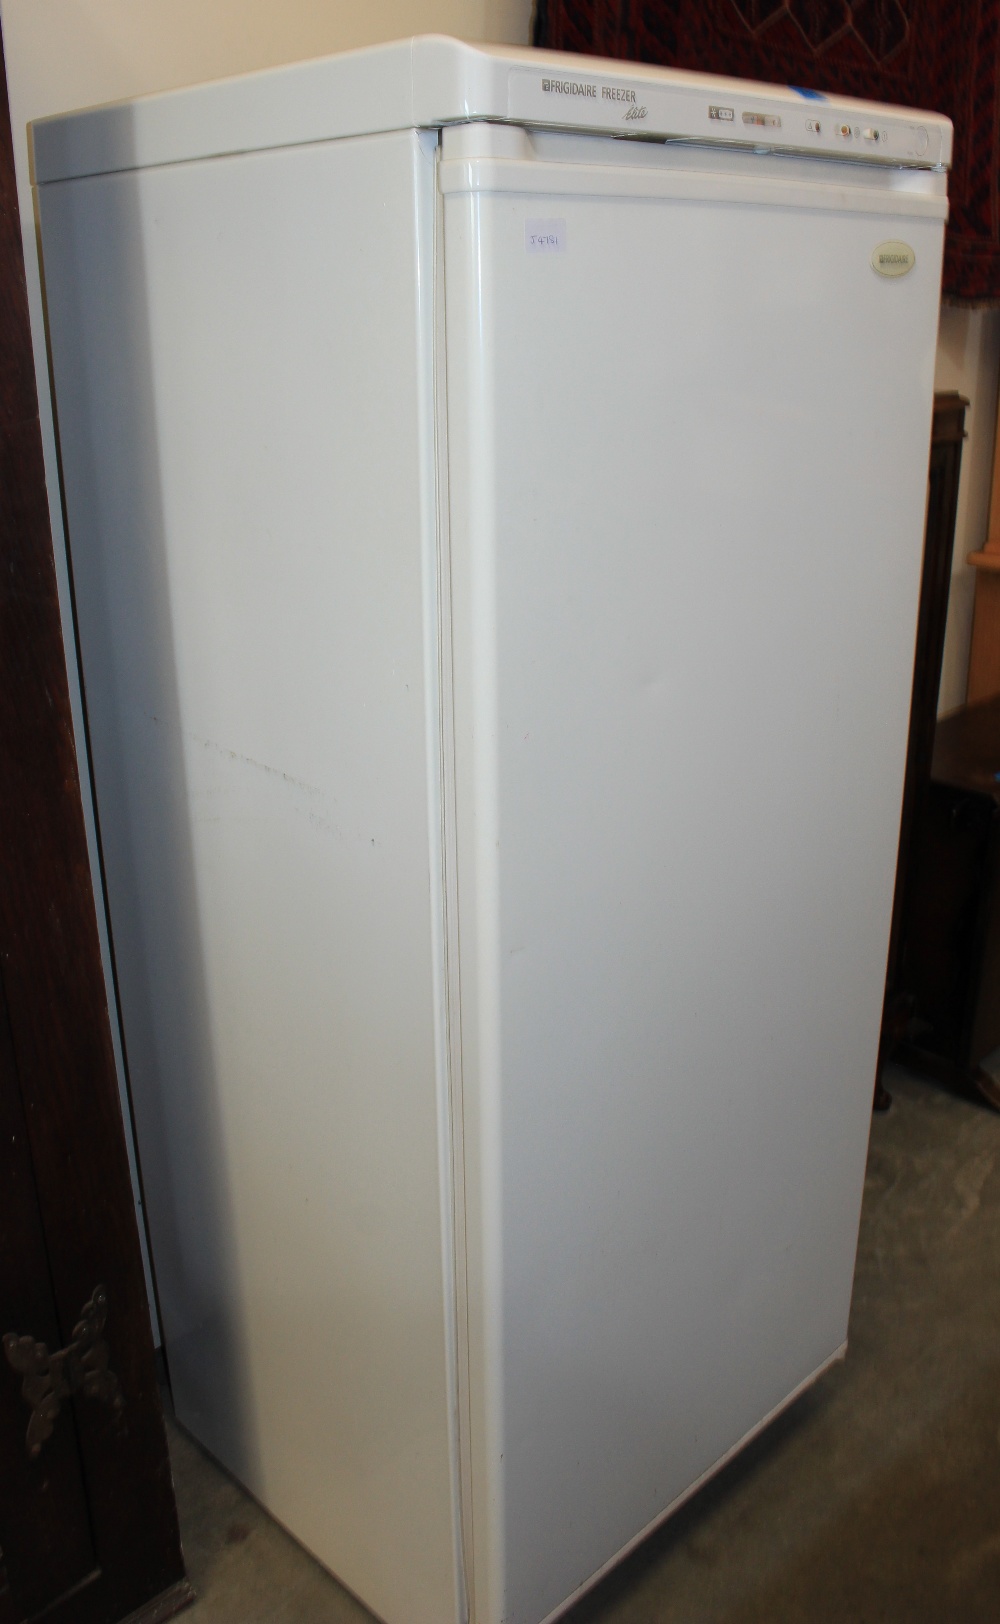 A Fridgidaire freezer finished in white enamel